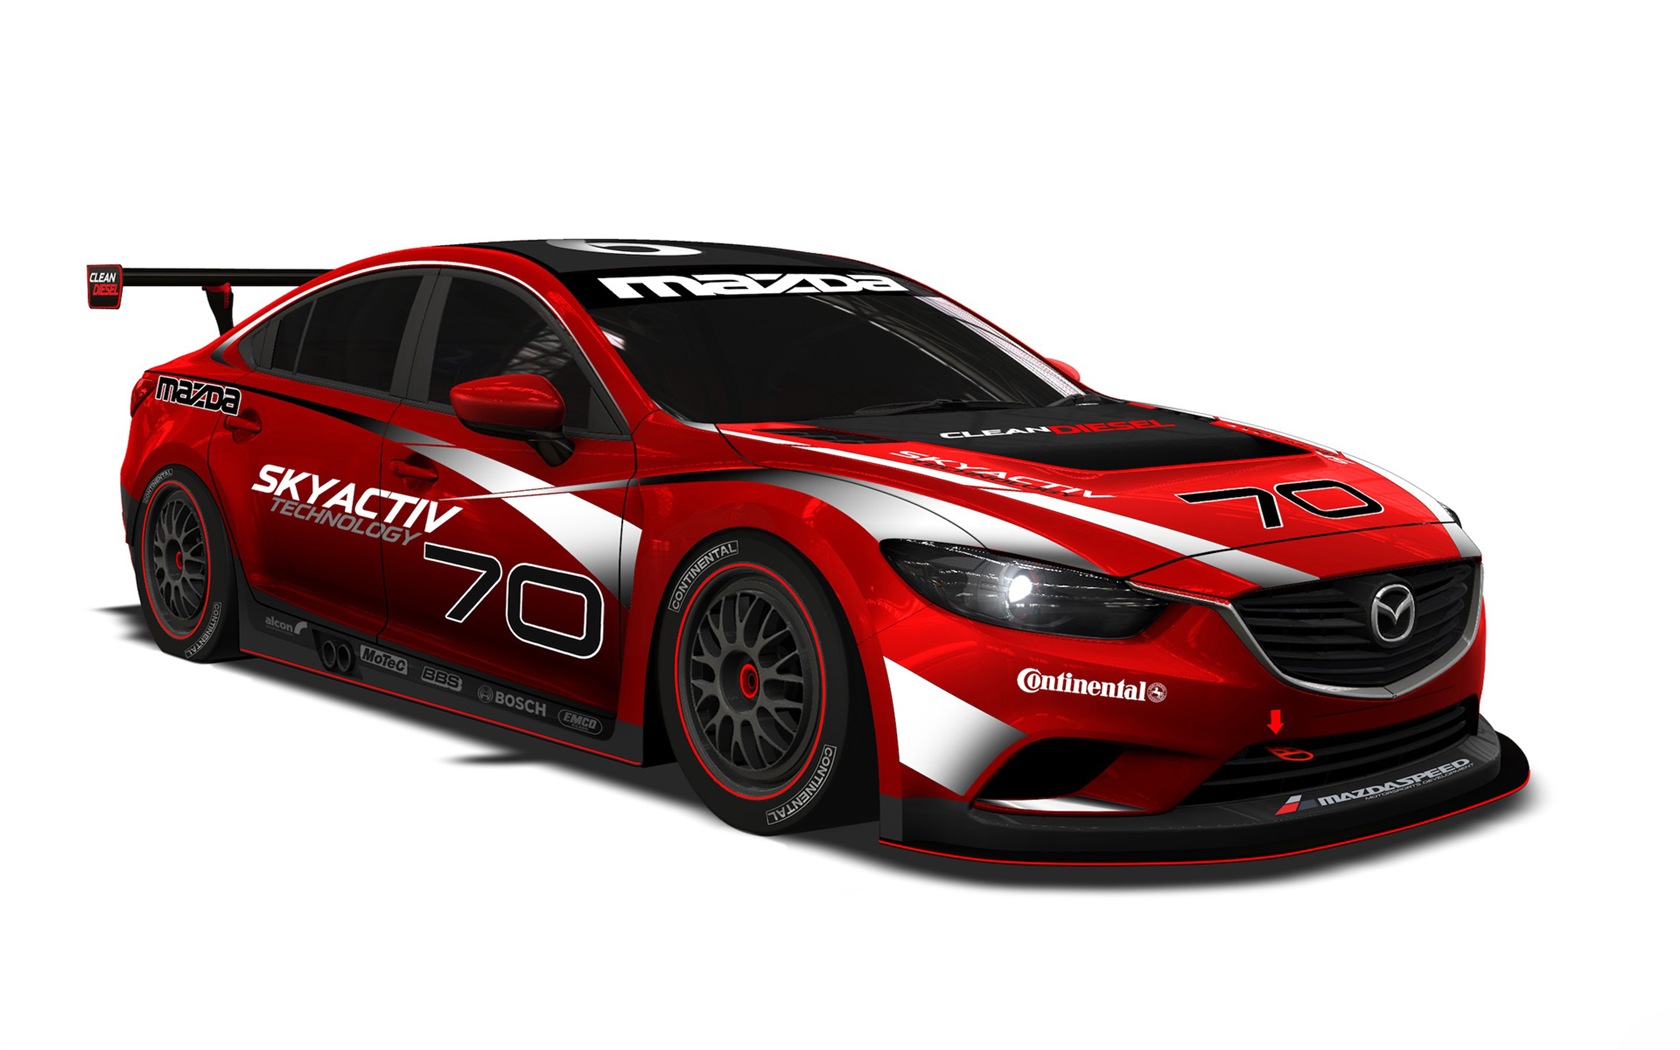 2013 Mazda 6 Skyactiv-D race car 马自达 高清壁纸10 - 1680x1050